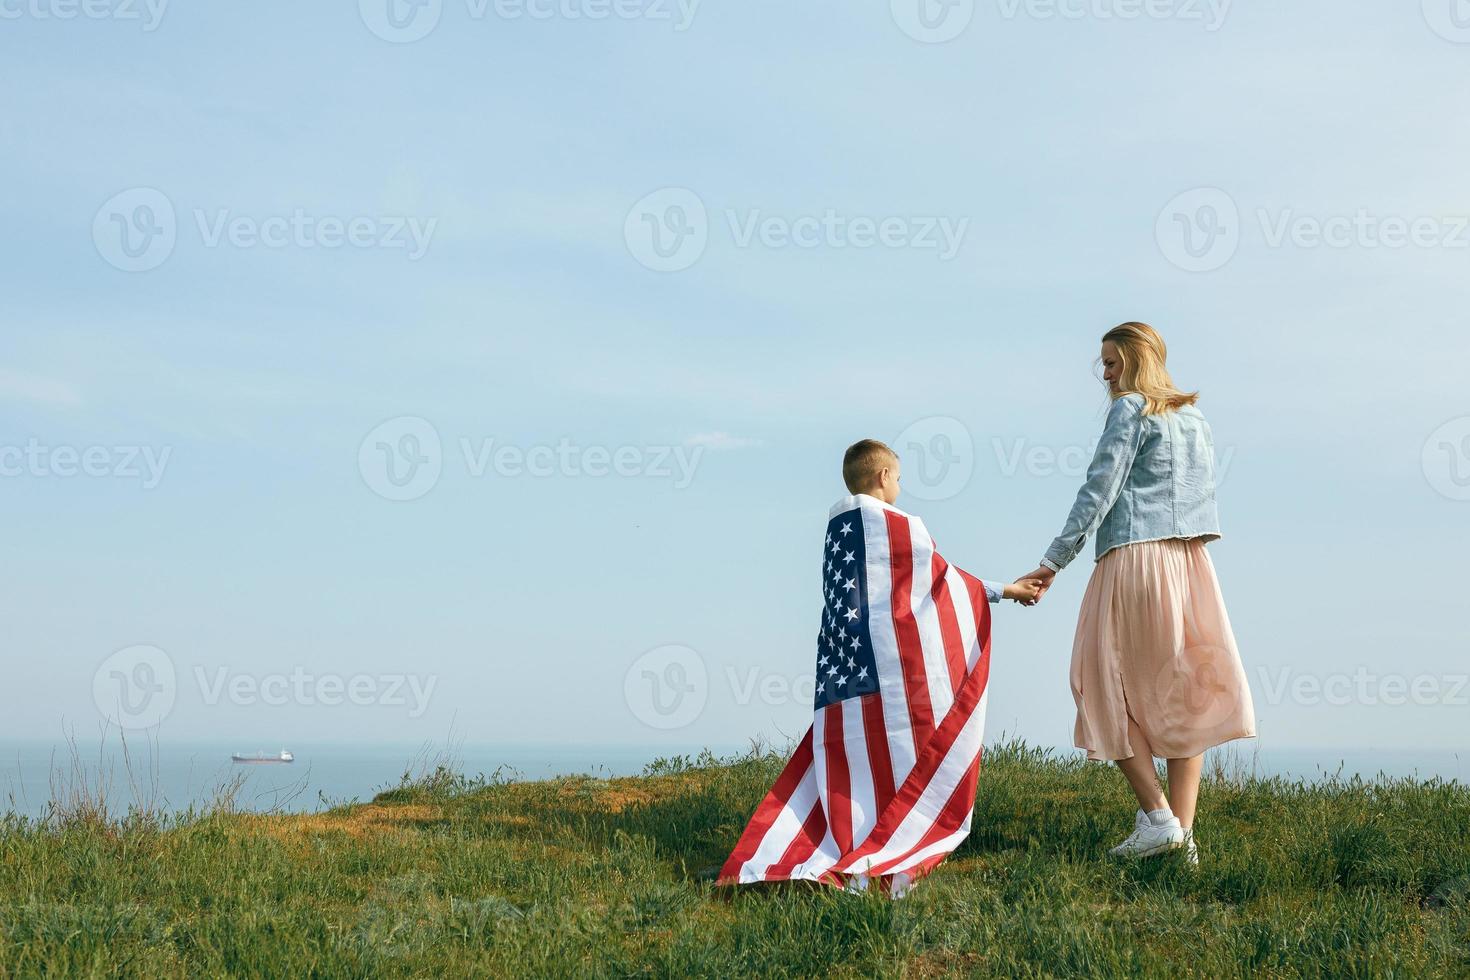 alleenstaande moeder met zoon op onafhankelijkheidsdag van de vs foto